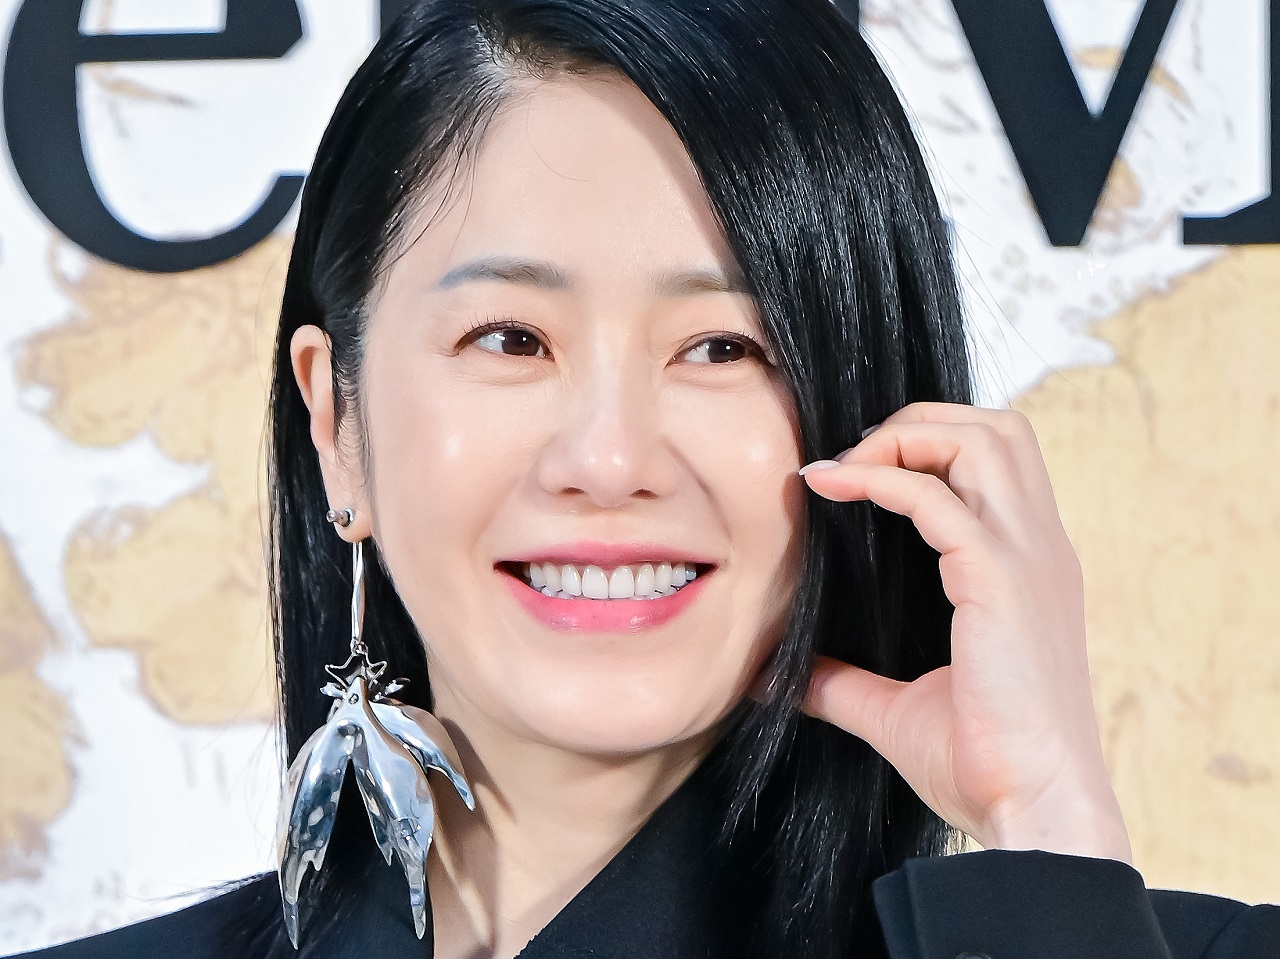 “奇跡の50代”韓国女優、6年前の「パワハラ」疑惑に再注目…ユーチューブでの発言が発端